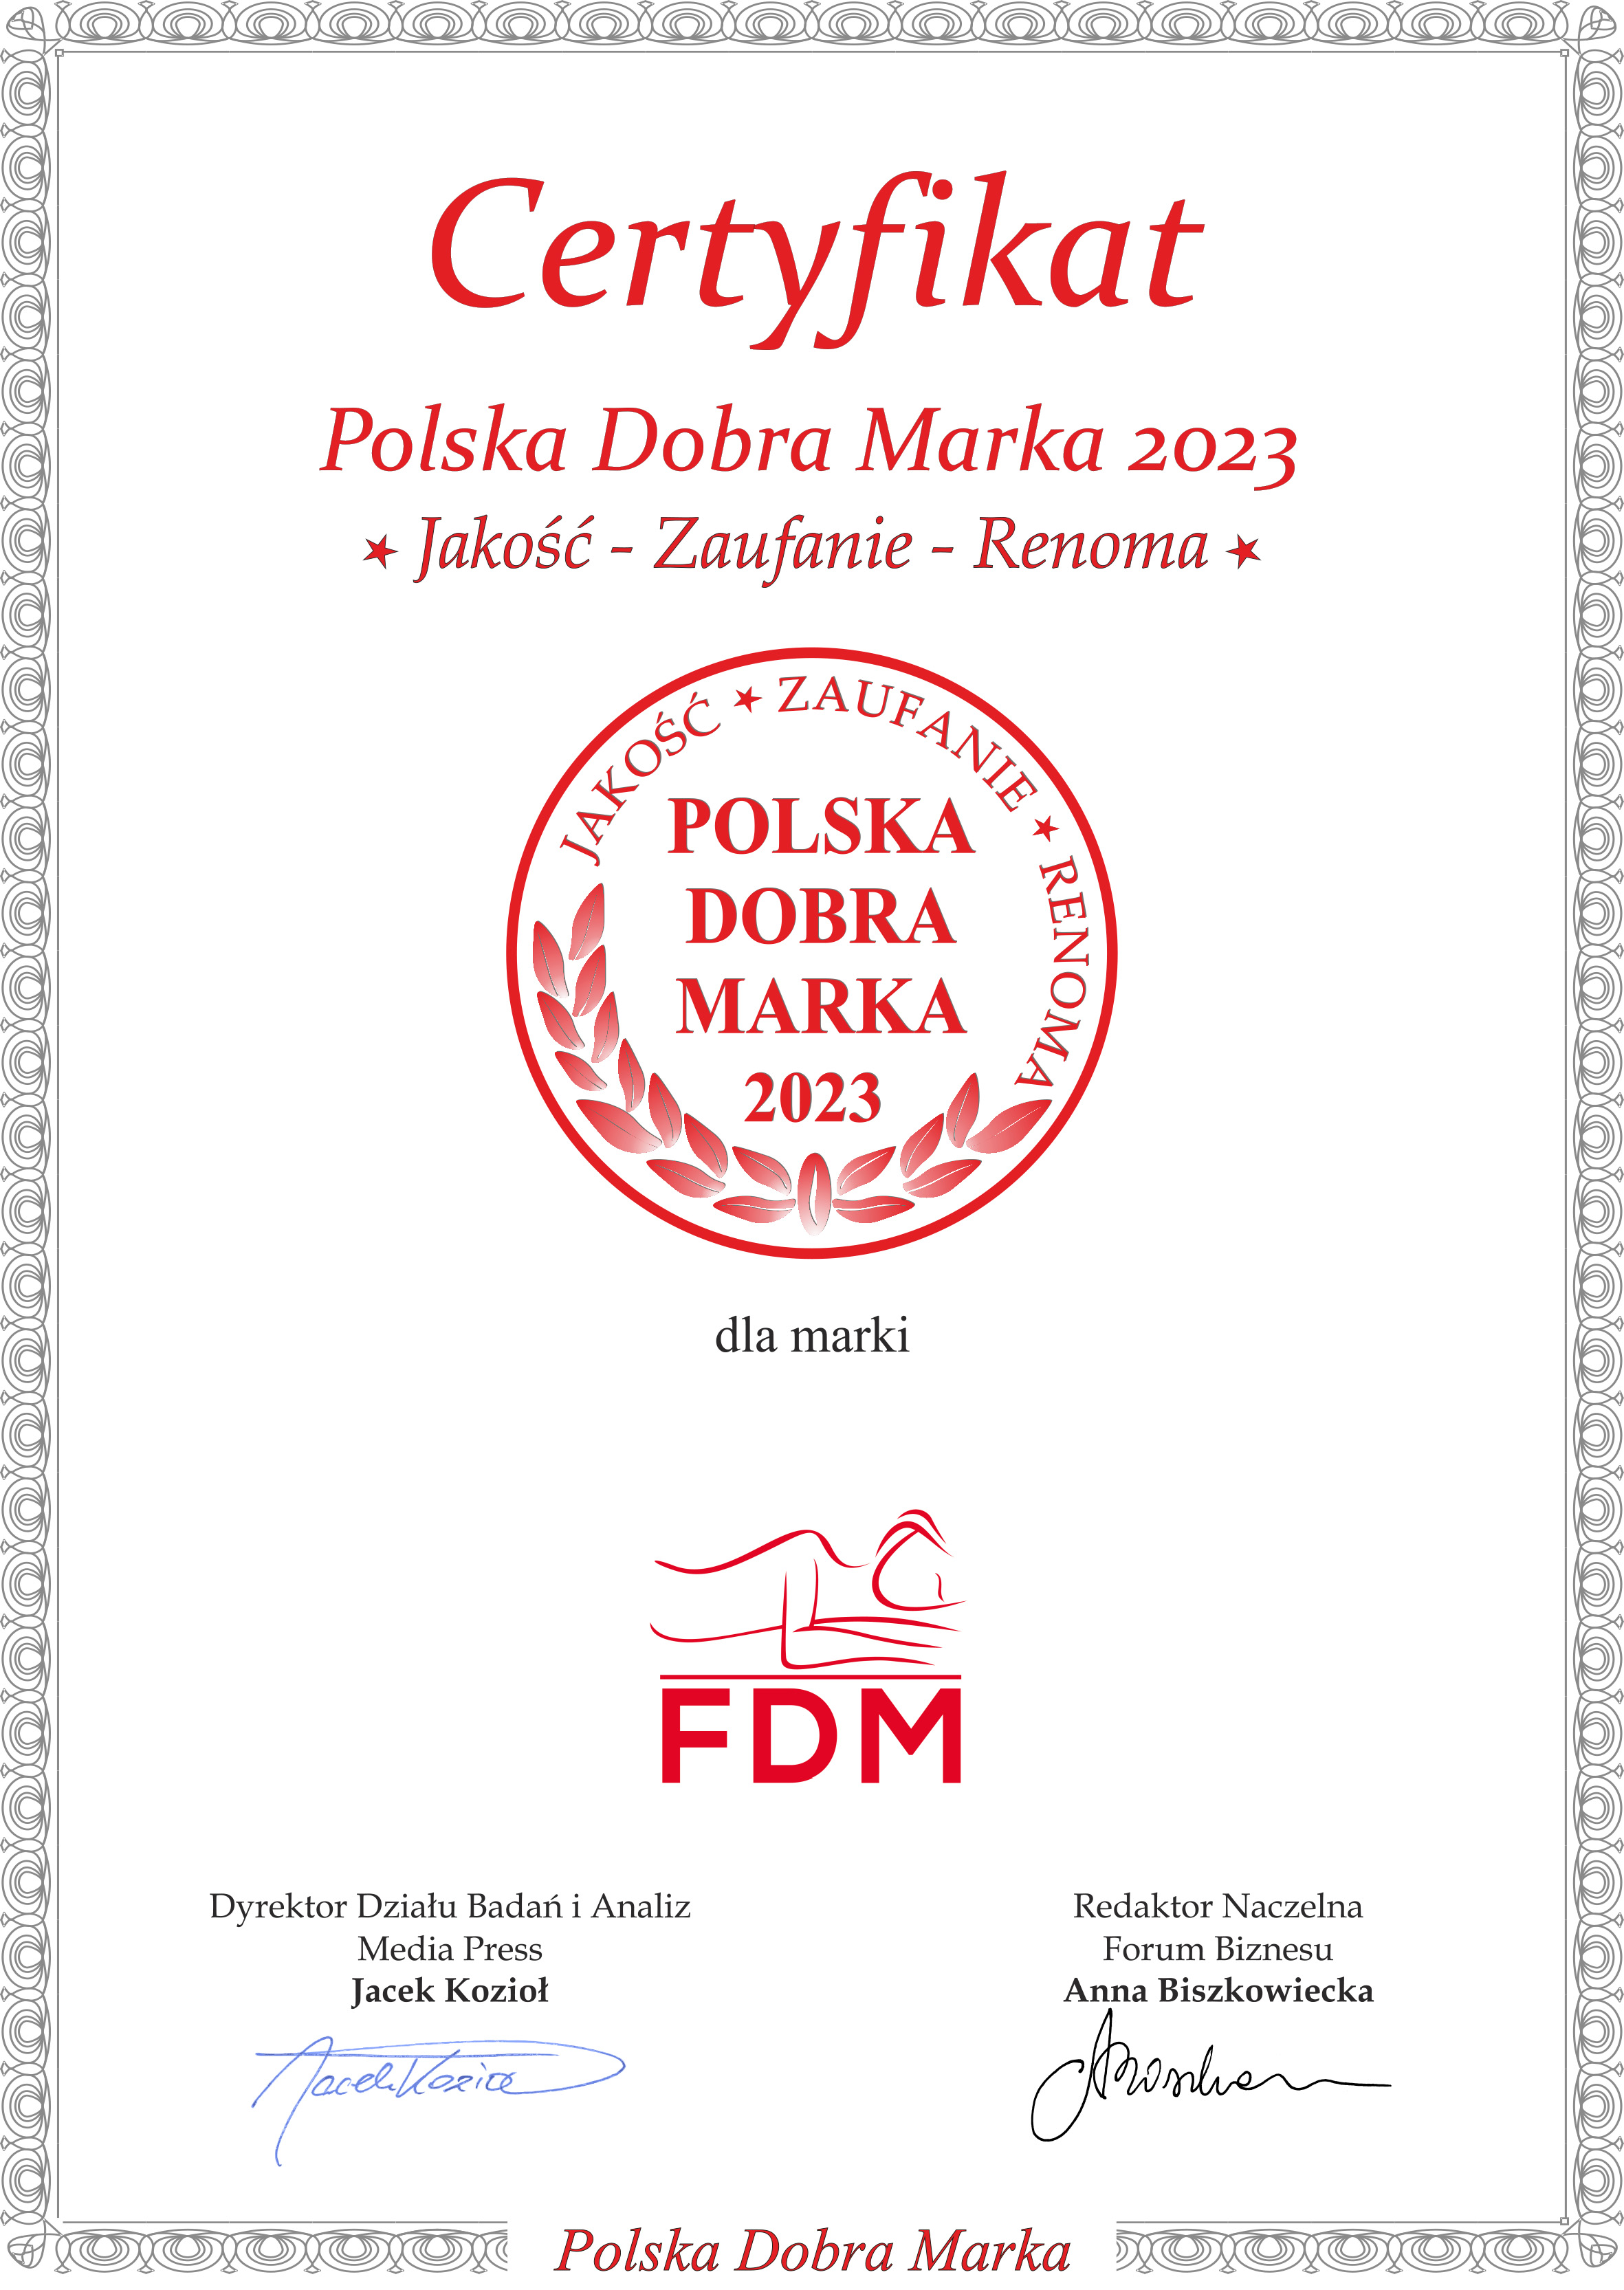 Certyfikat Dobra Marka 2023 dla FDM